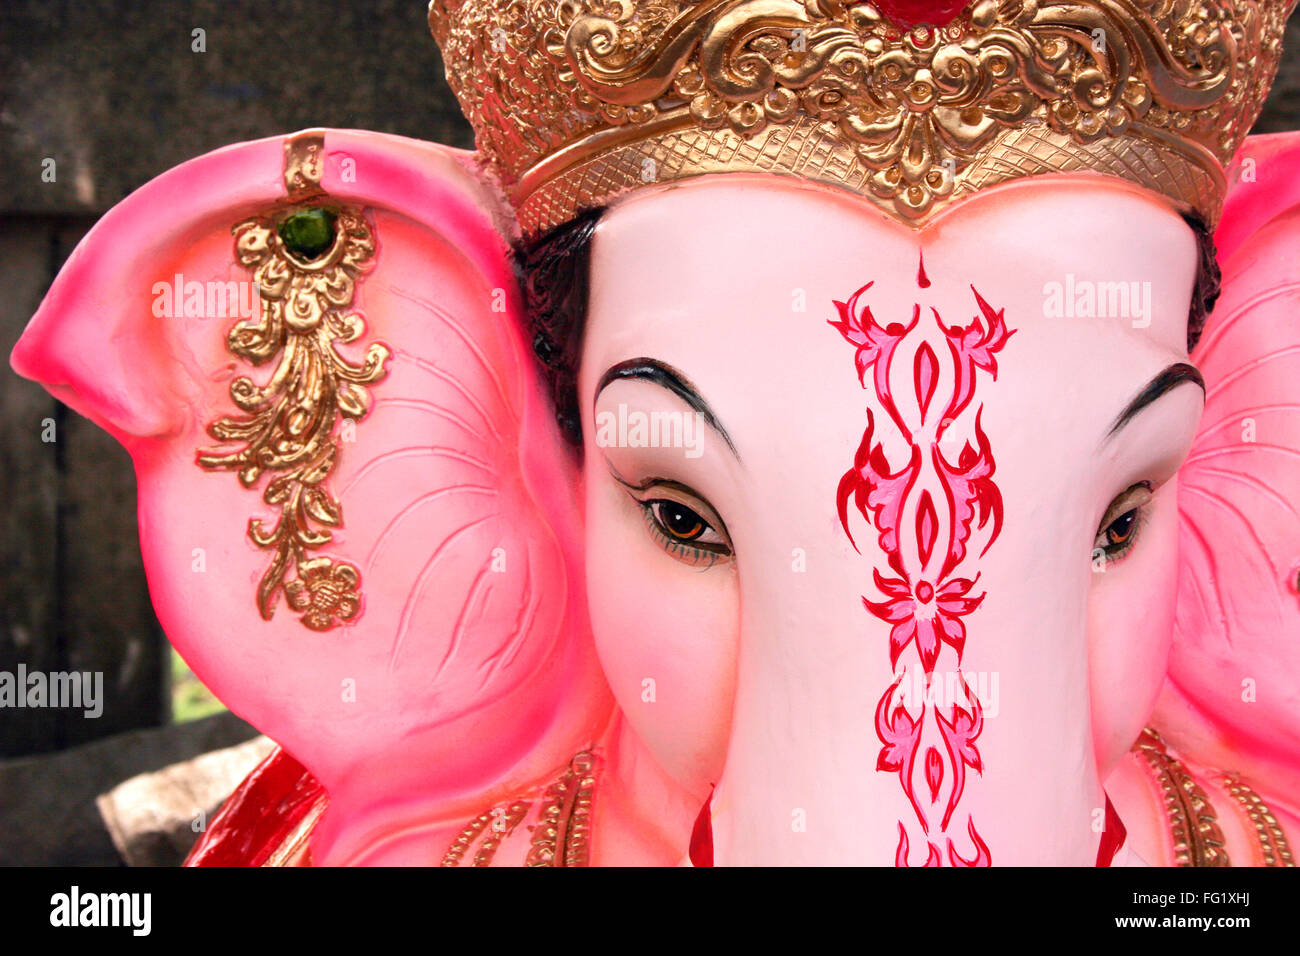 Portrait of idol of lord ganesha elephant headed god , Pune , Maharashtra , India Stock Photo